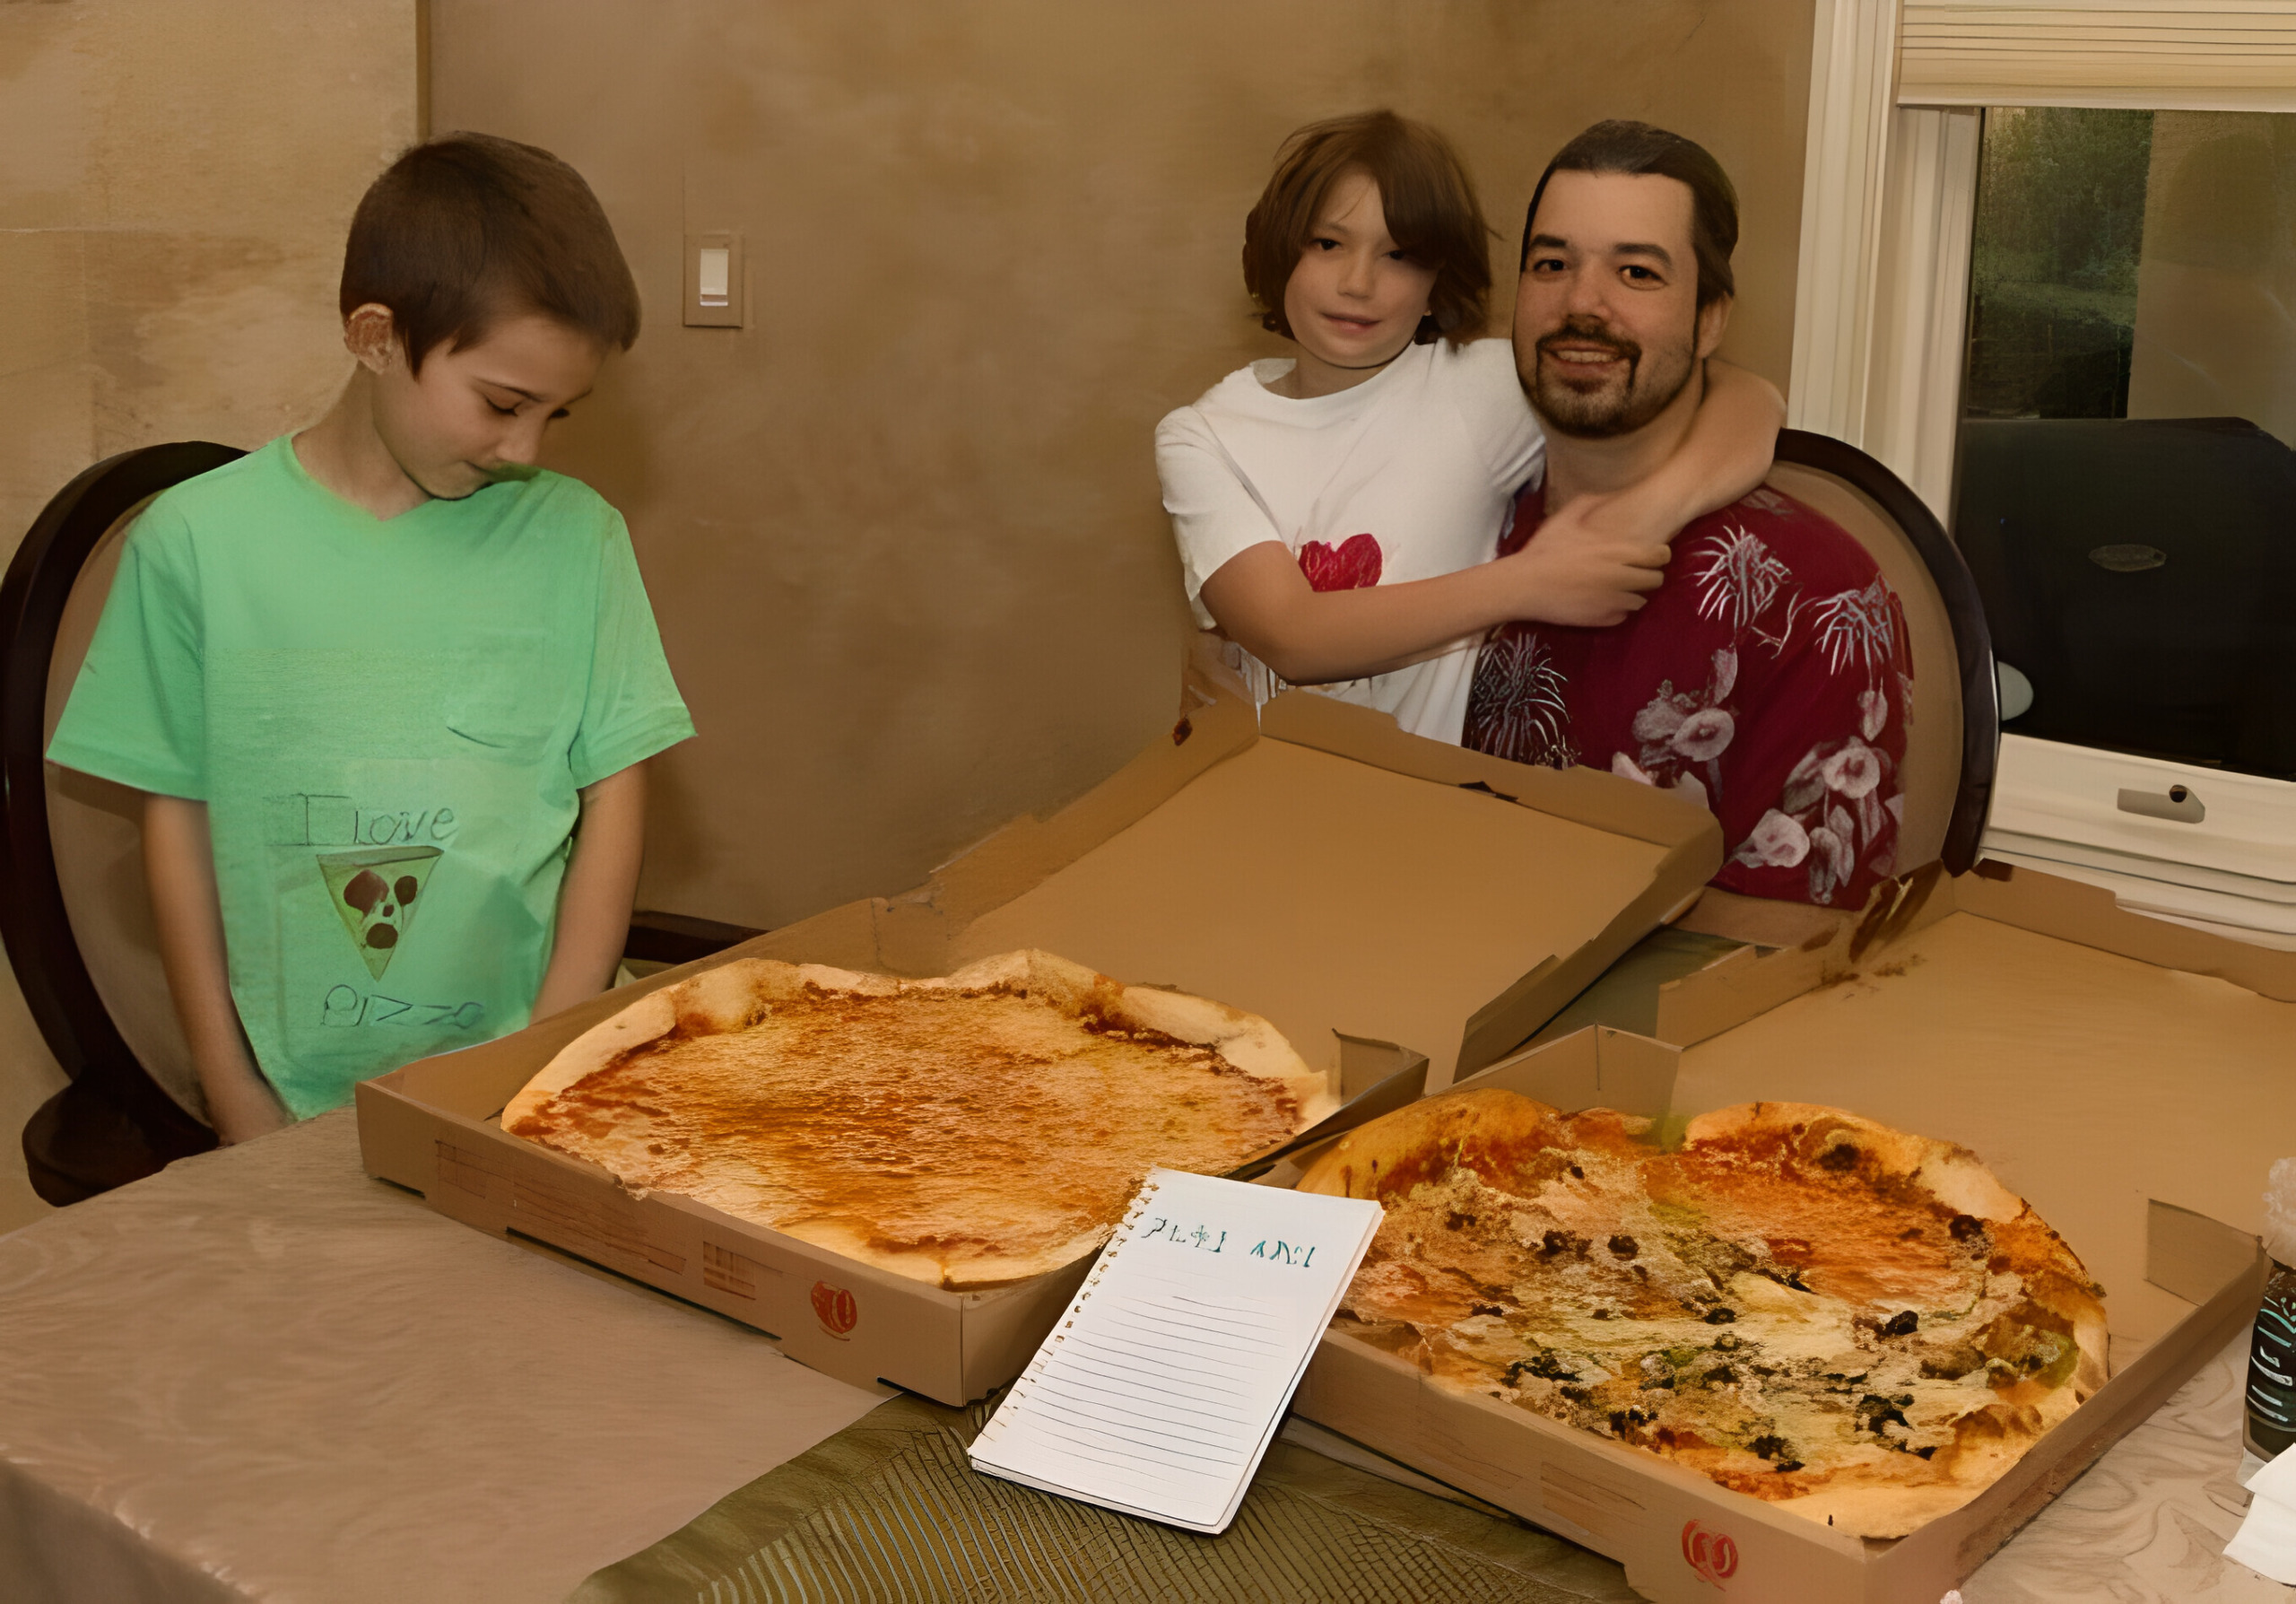 22 мая — годовщина биткоин-пиццы 1